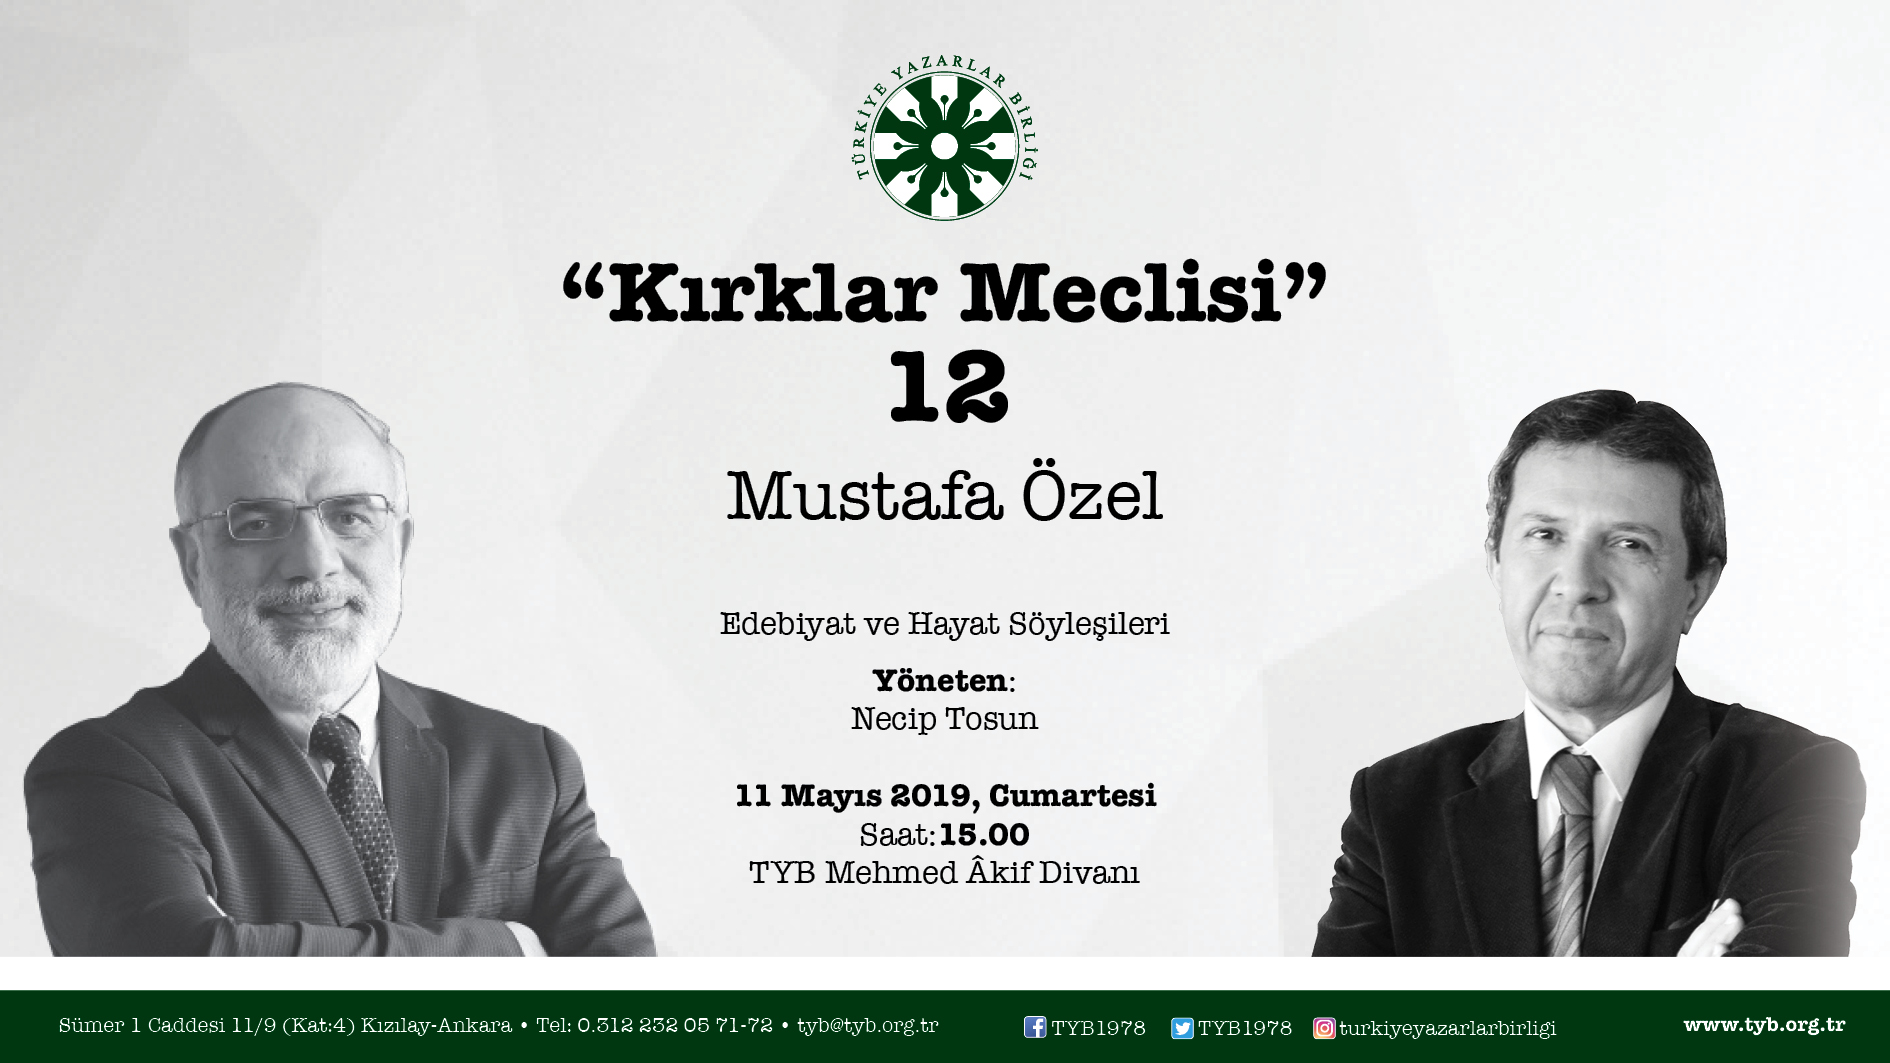 Mustafa Özel “Kırklar Meclisi”ne Konuk Olacak